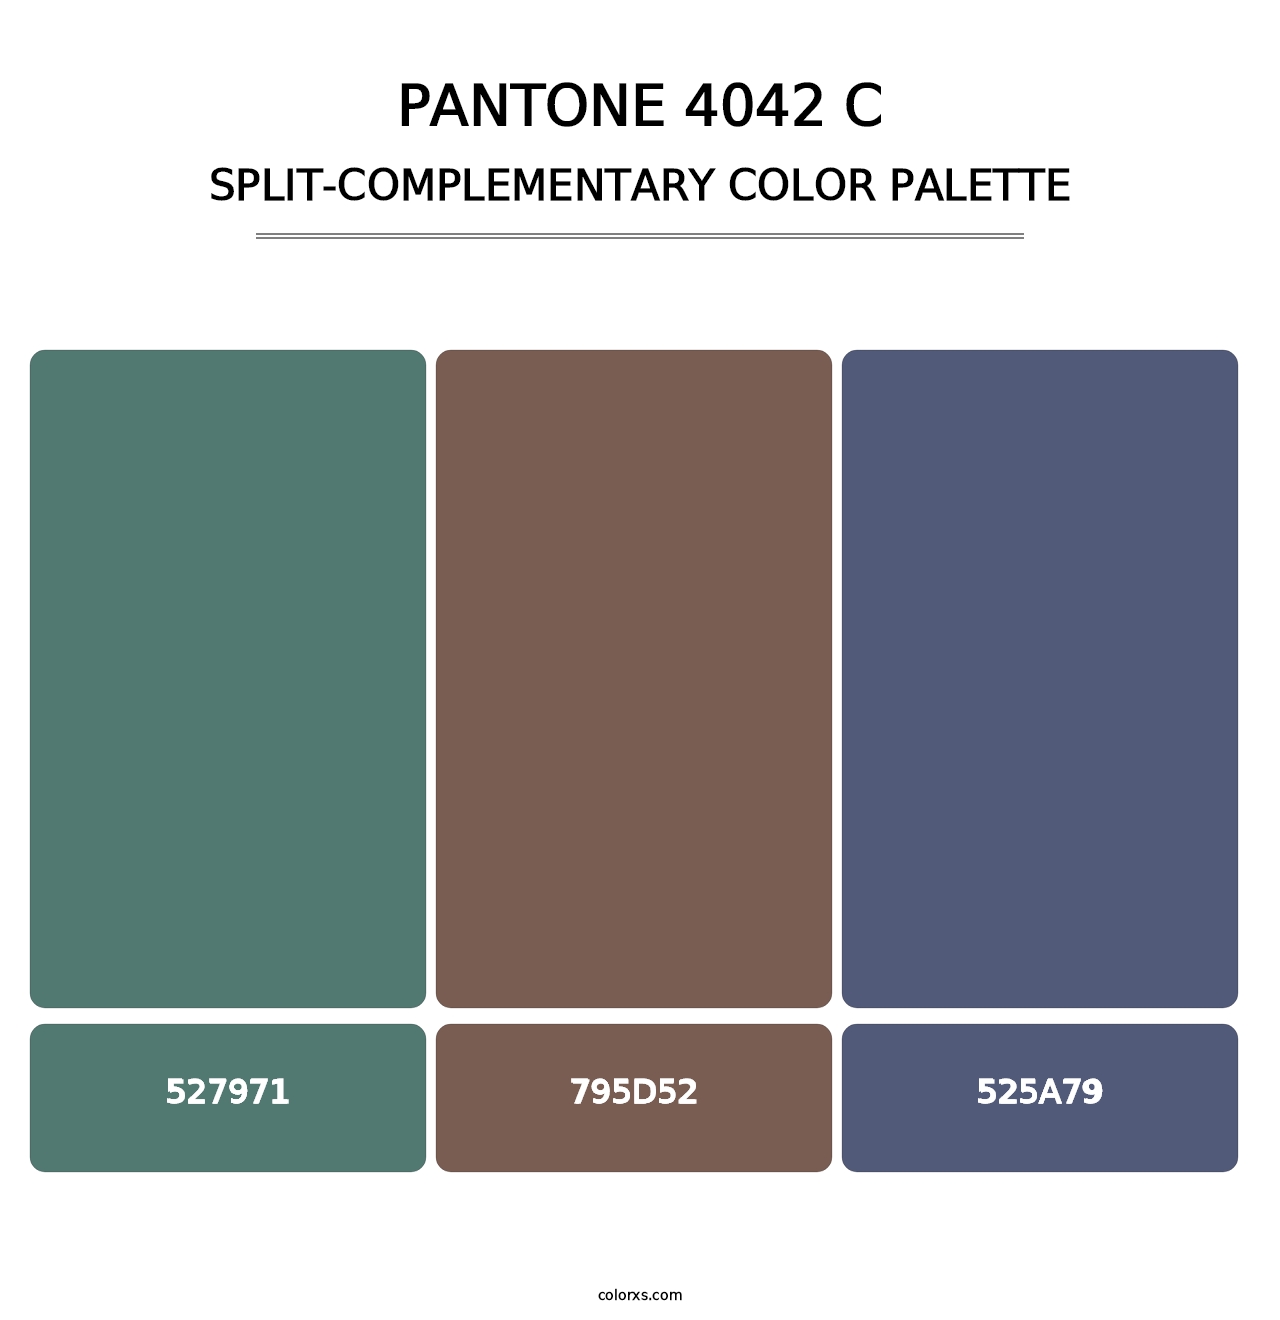 PANTONE 4042 C - Split-Complementary Color Palette